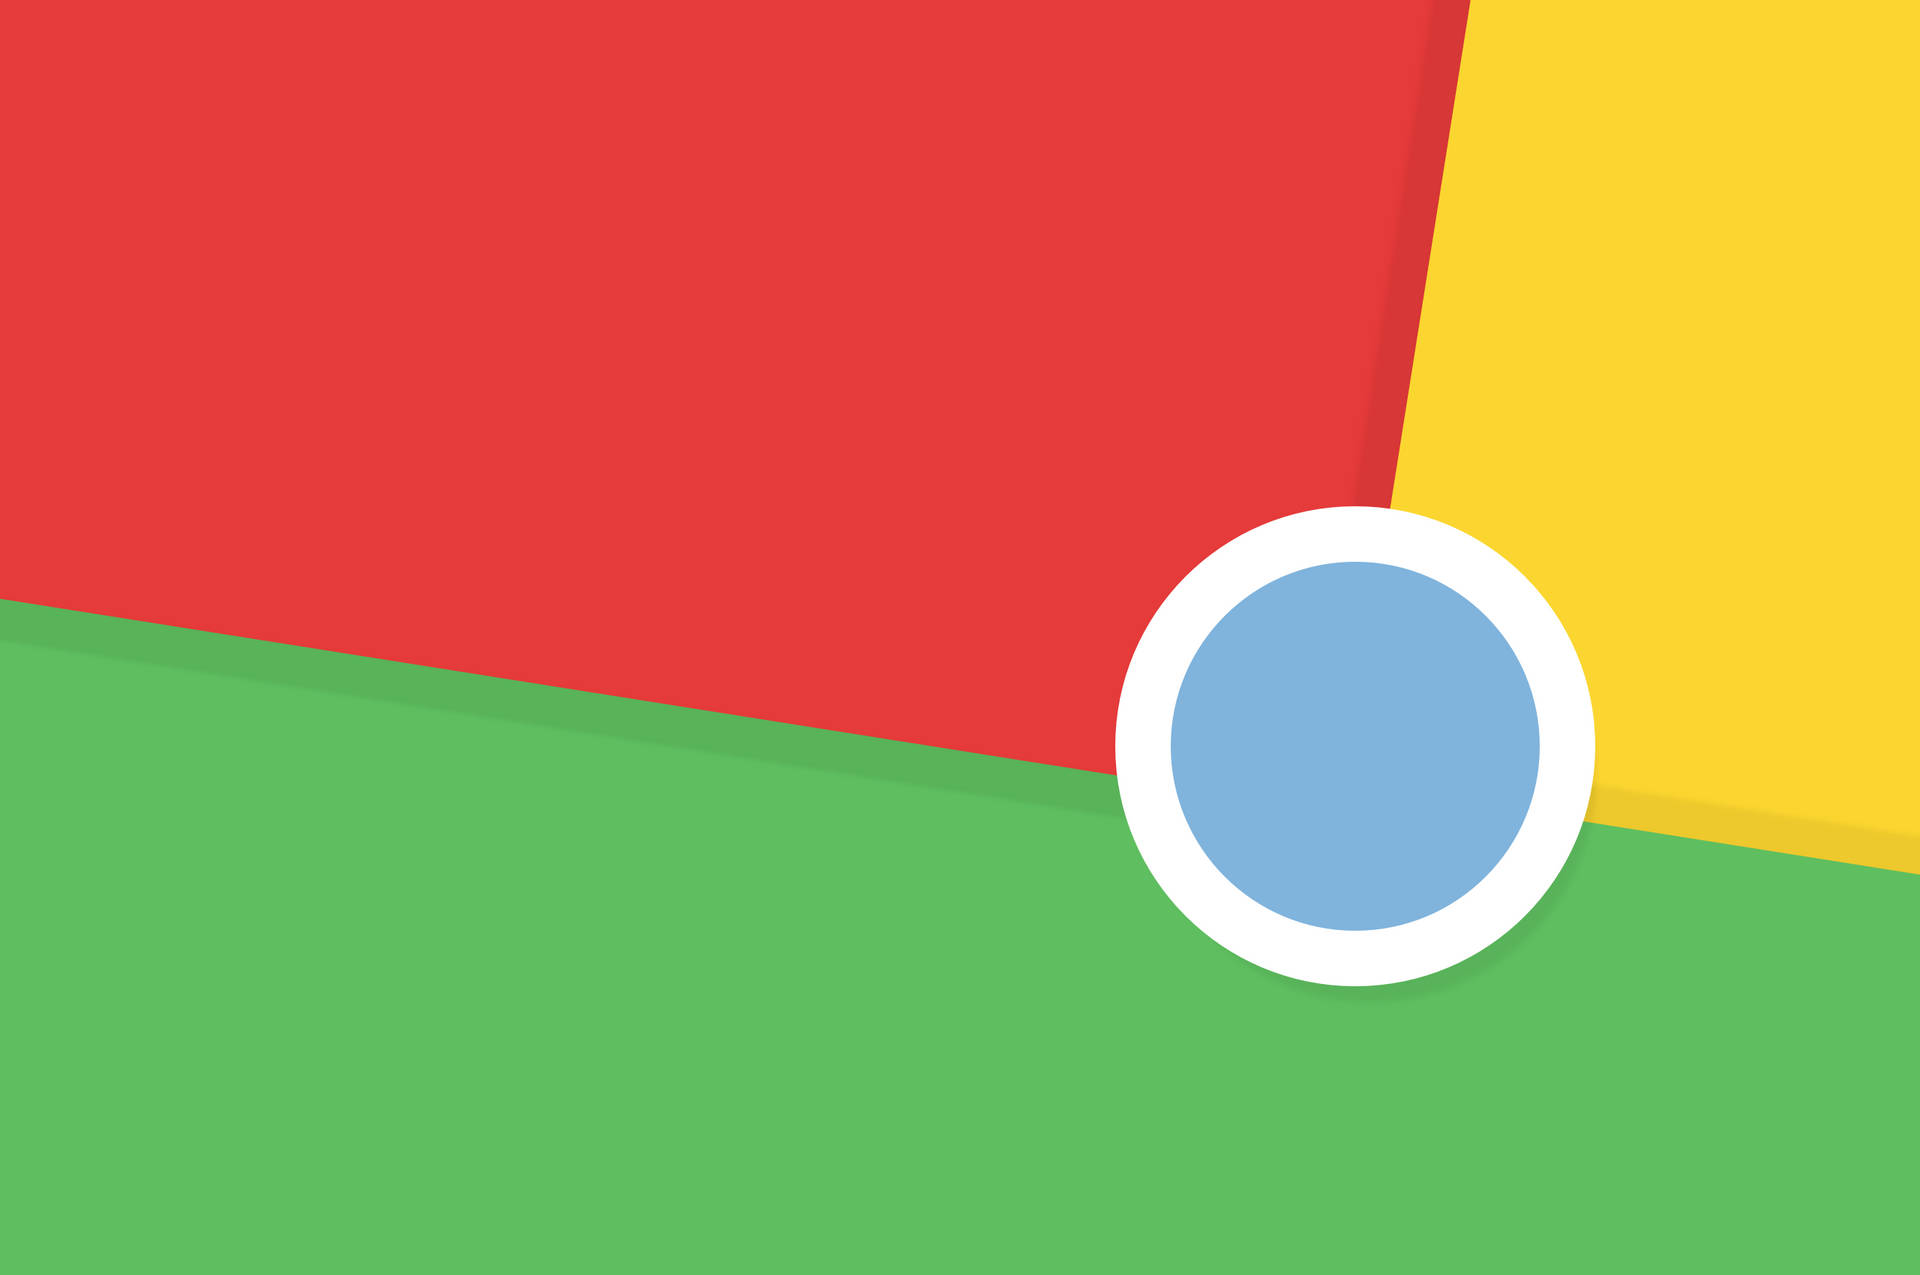 Flag-Like Google Chrome Wallpaper